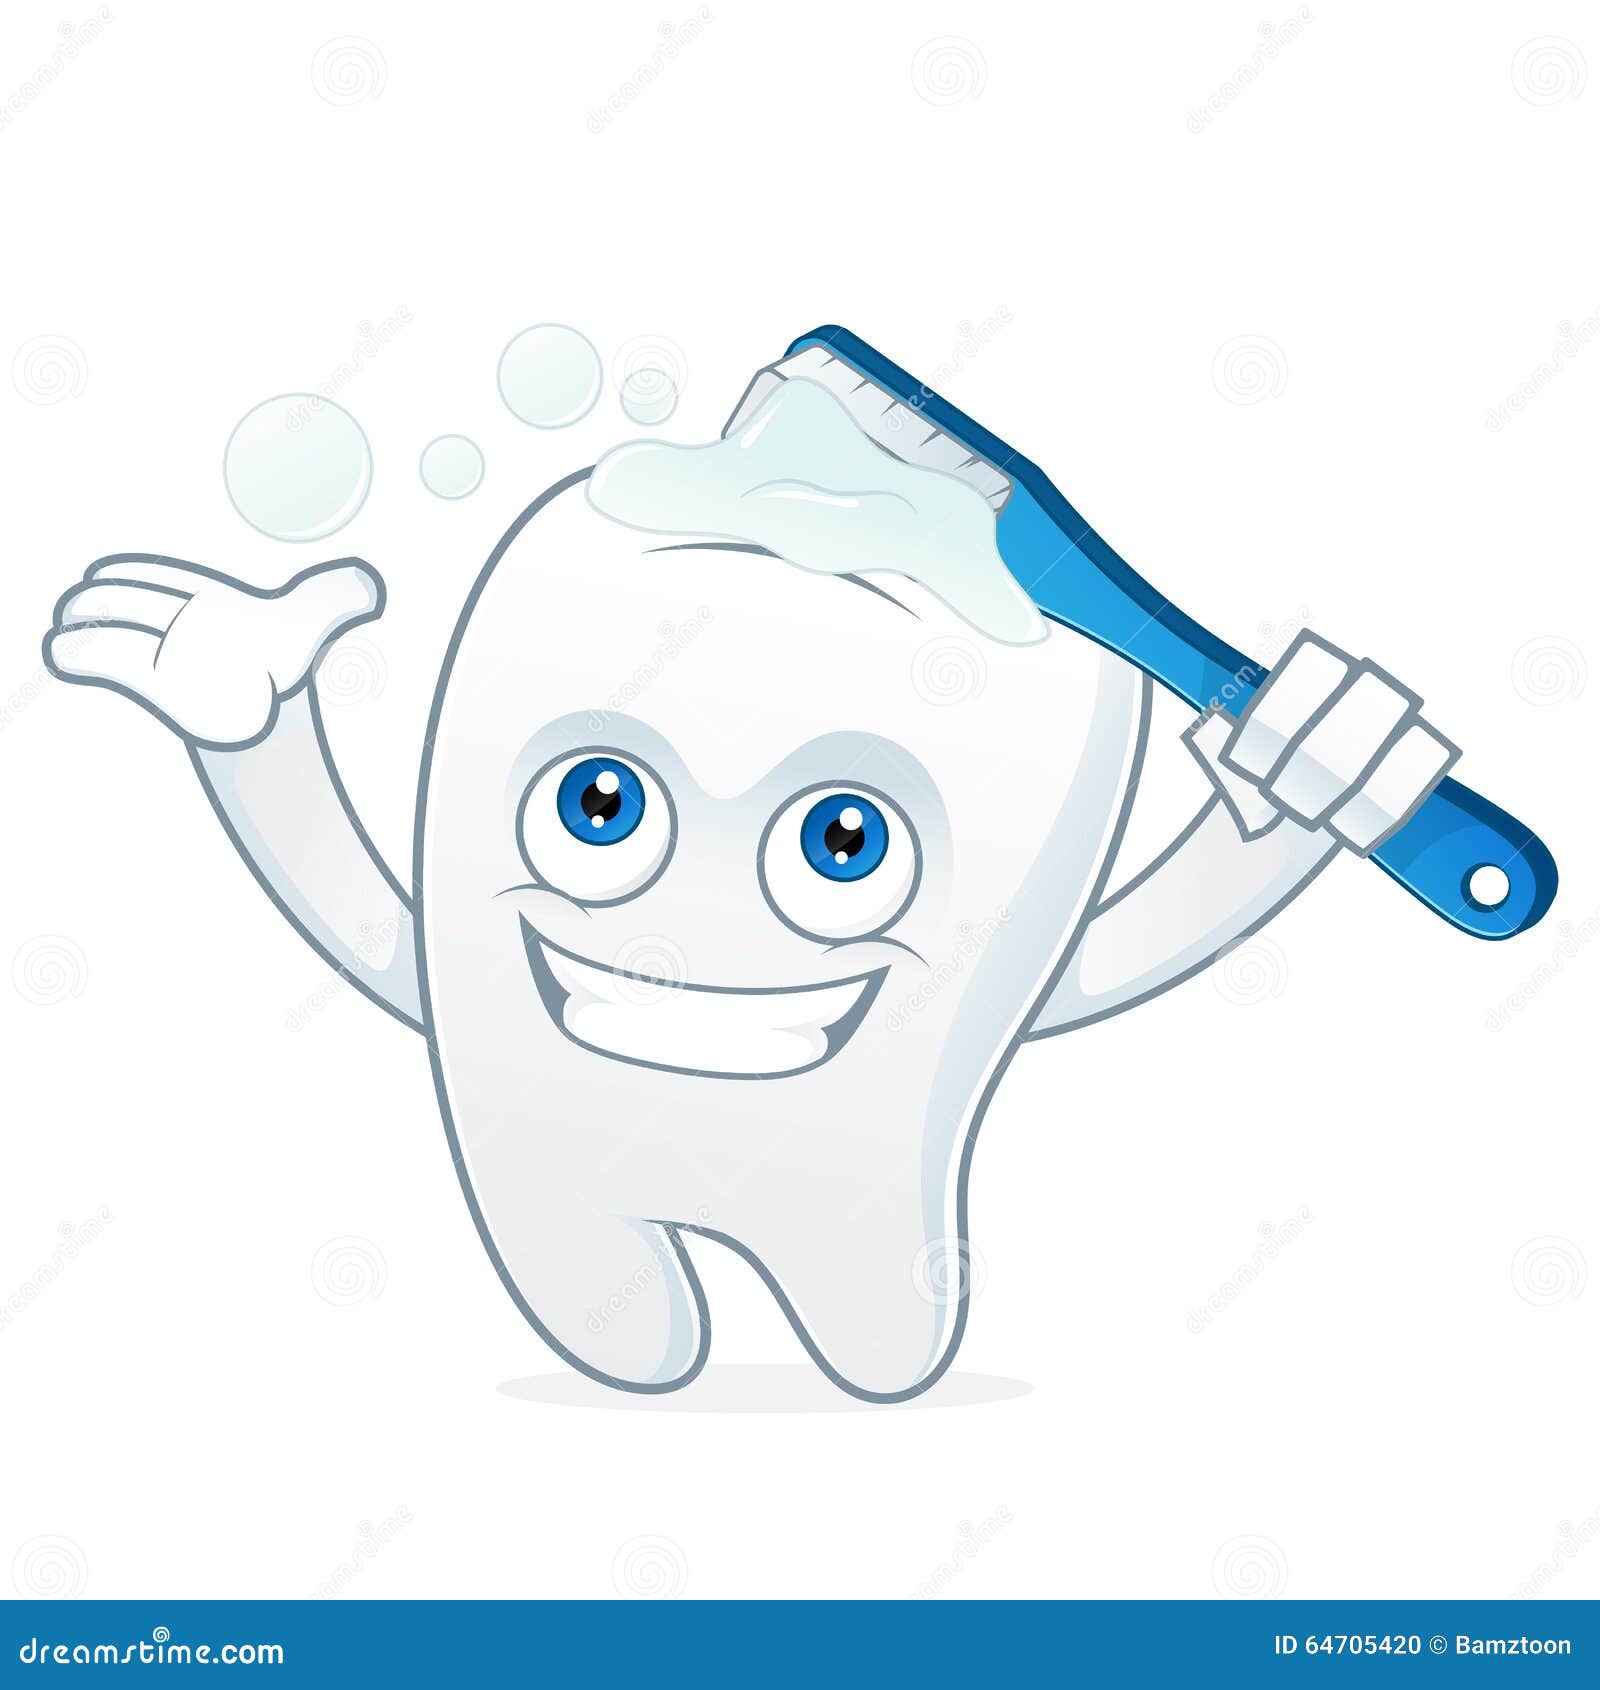 tooth cartoon mascot brushing teeth